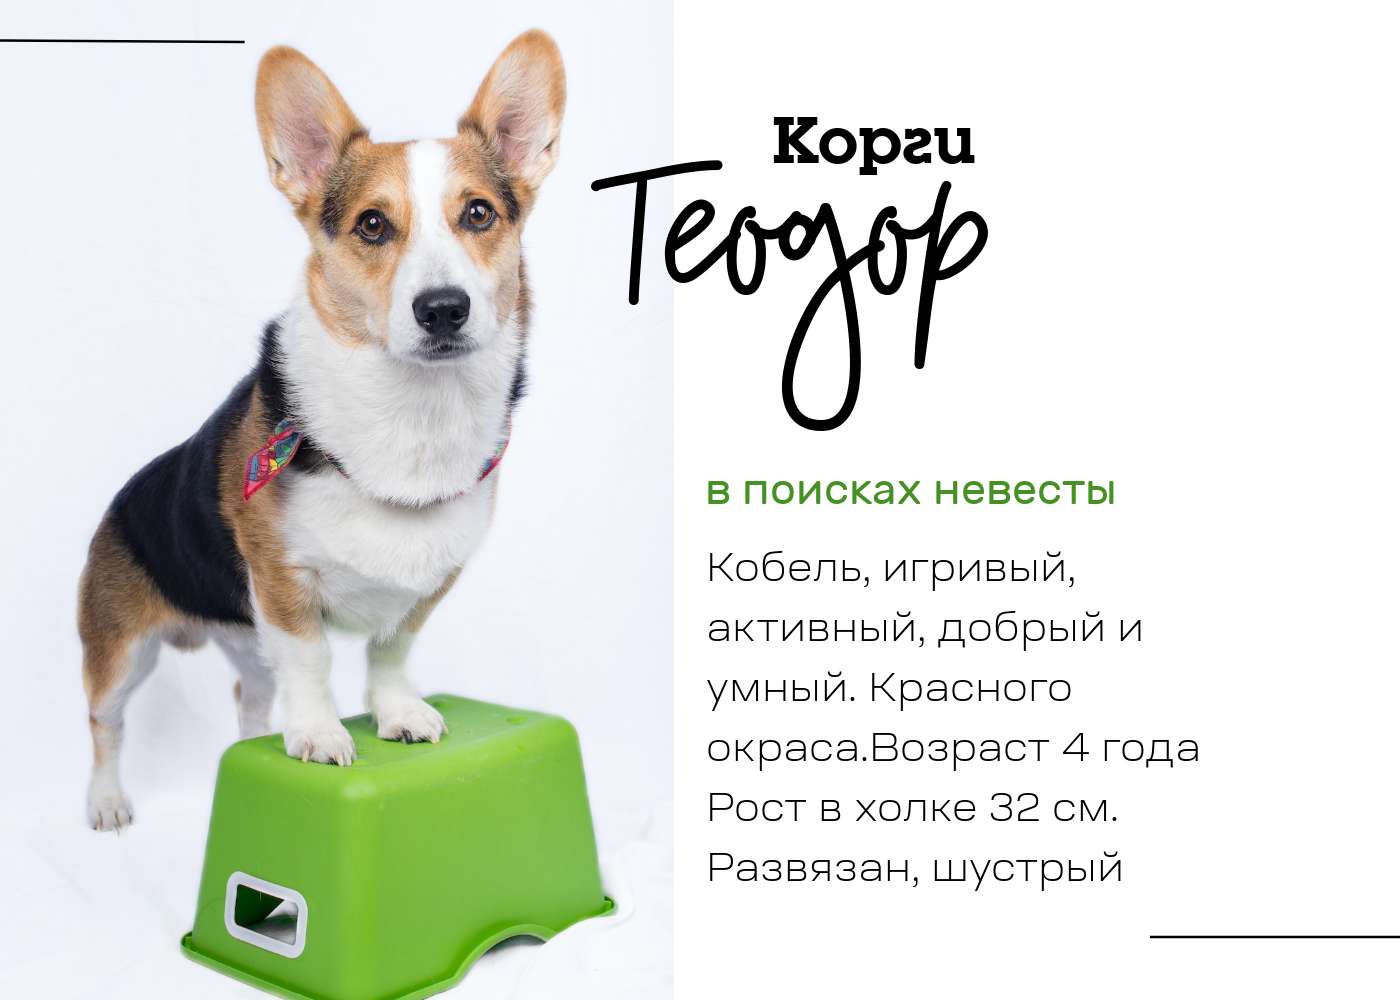 Симпатичная публикация с презентацией для собаки породы корги кардиган